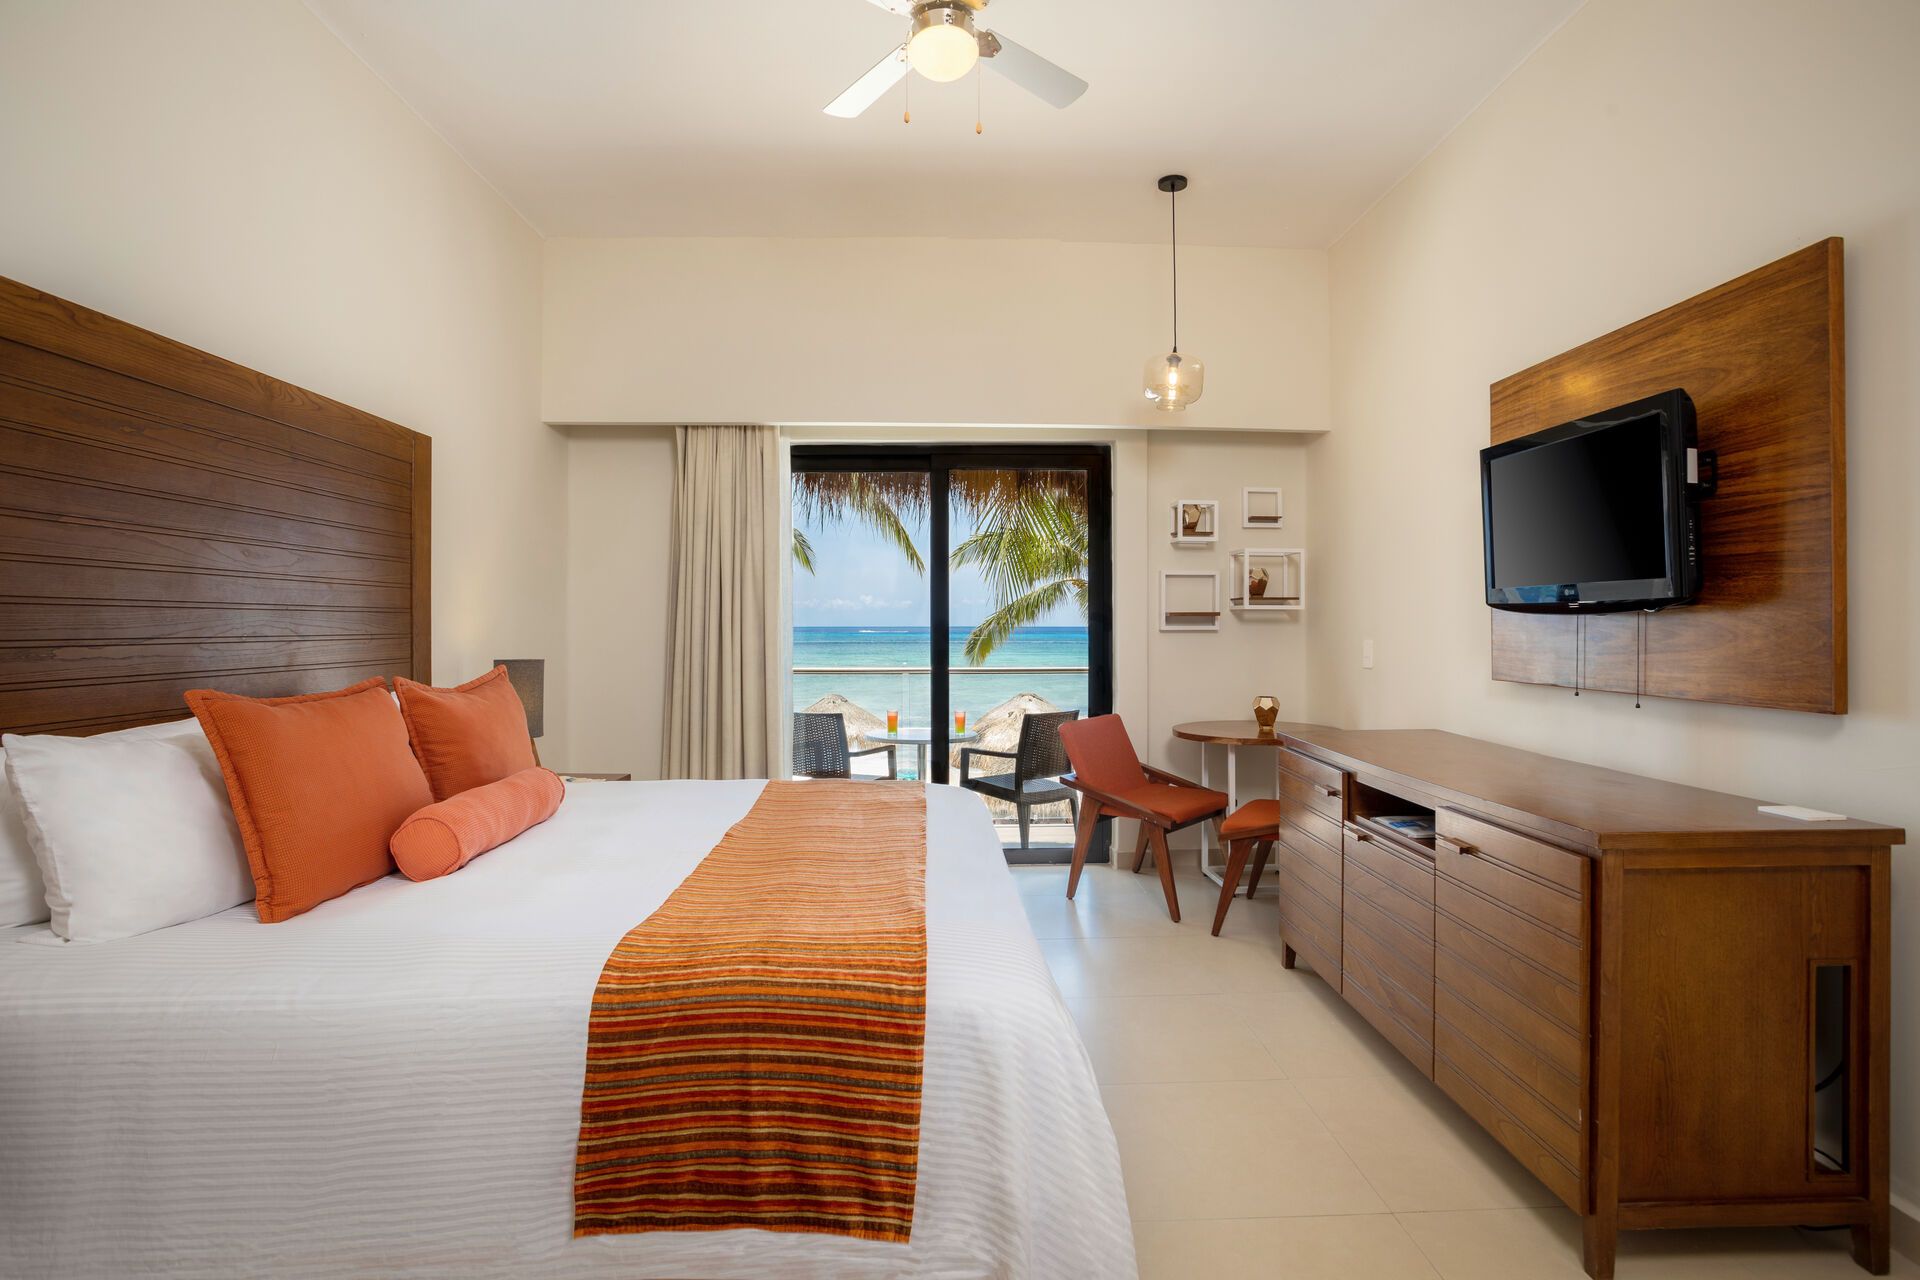 Mexique - Ile de Cozumel - Hotel Sunscape Sabor Cozumel 4*